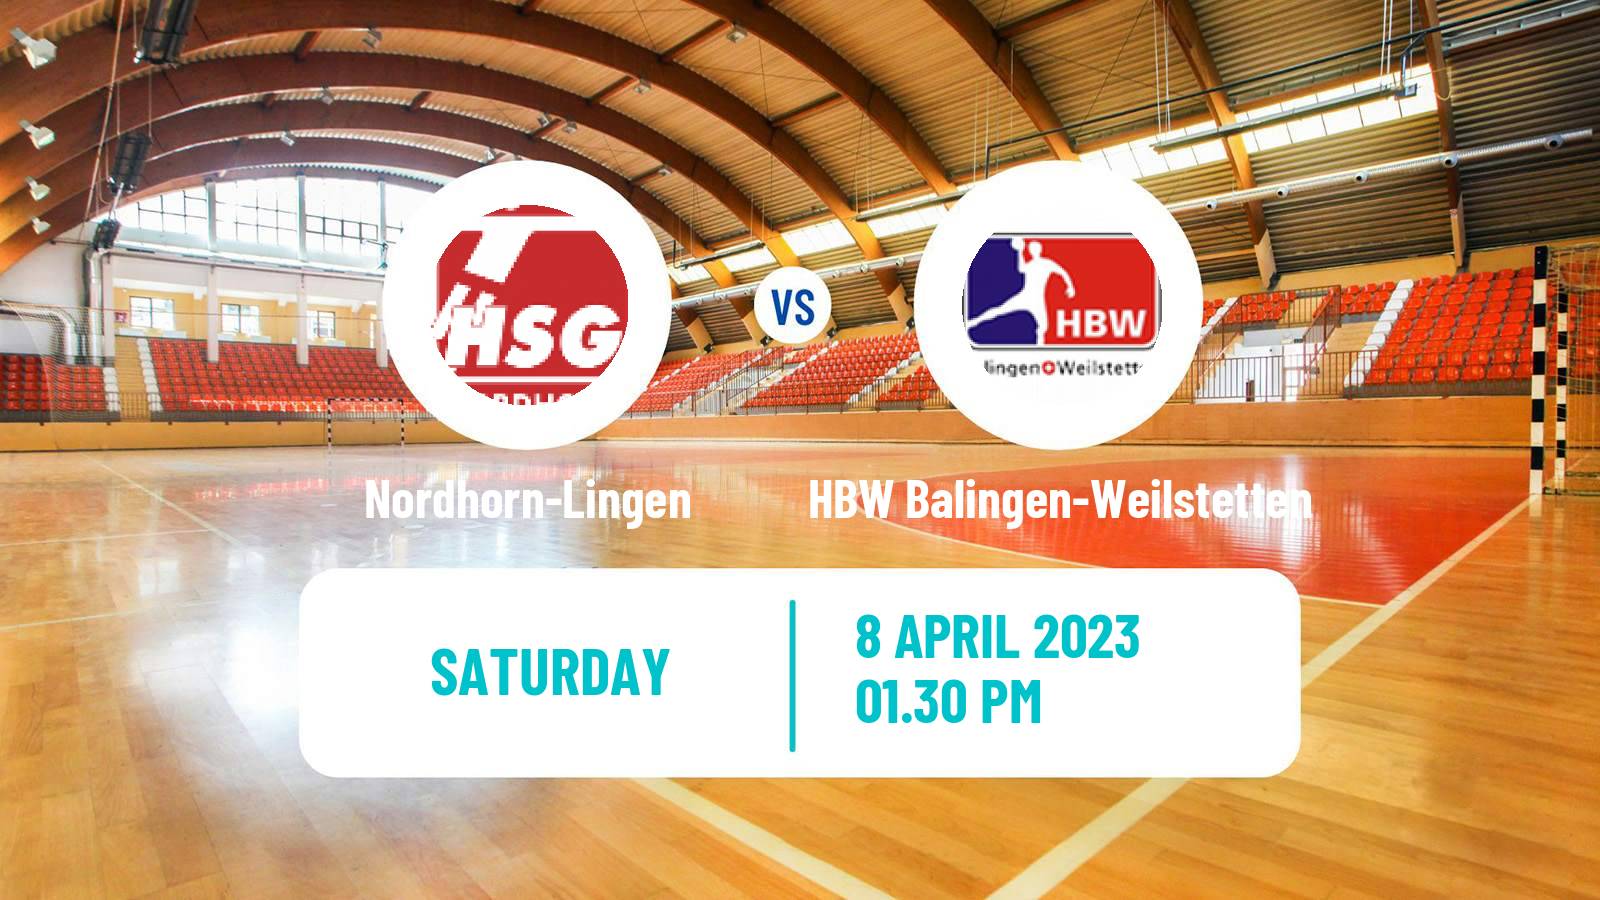 Handball German 2 Bundesliga Handball Nordhorn-Lingen - HBW Balingen-Weilstetten